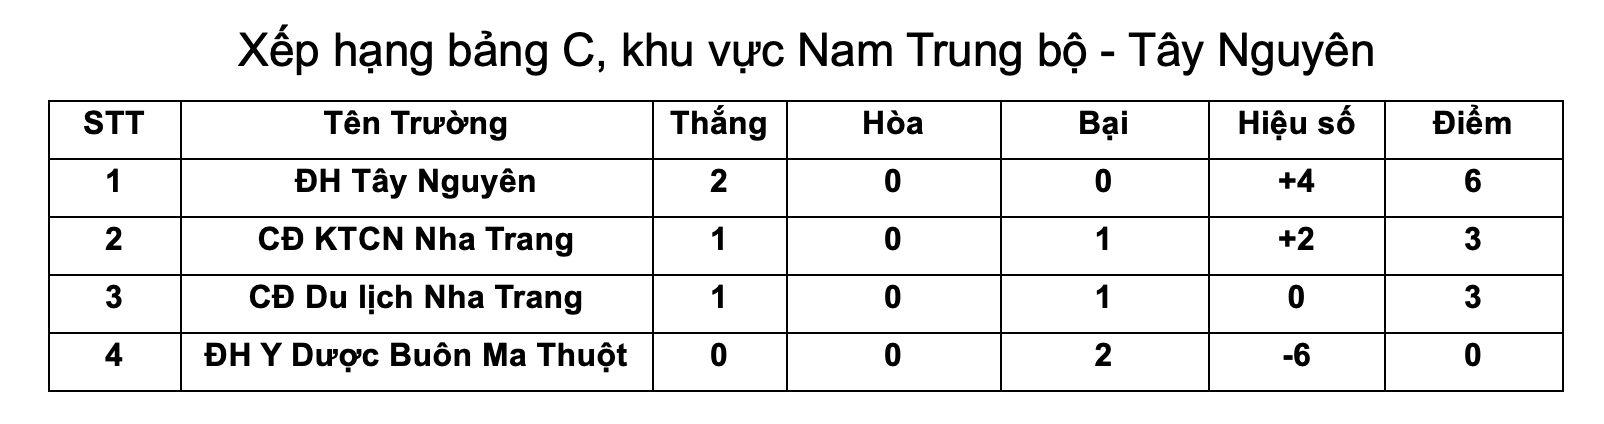 CĐ KTCN Nha Trang vs ĐH Y Dược Buôn Ma Thuột: Còn cơ hội là còn chiến! - Ảnh 4.